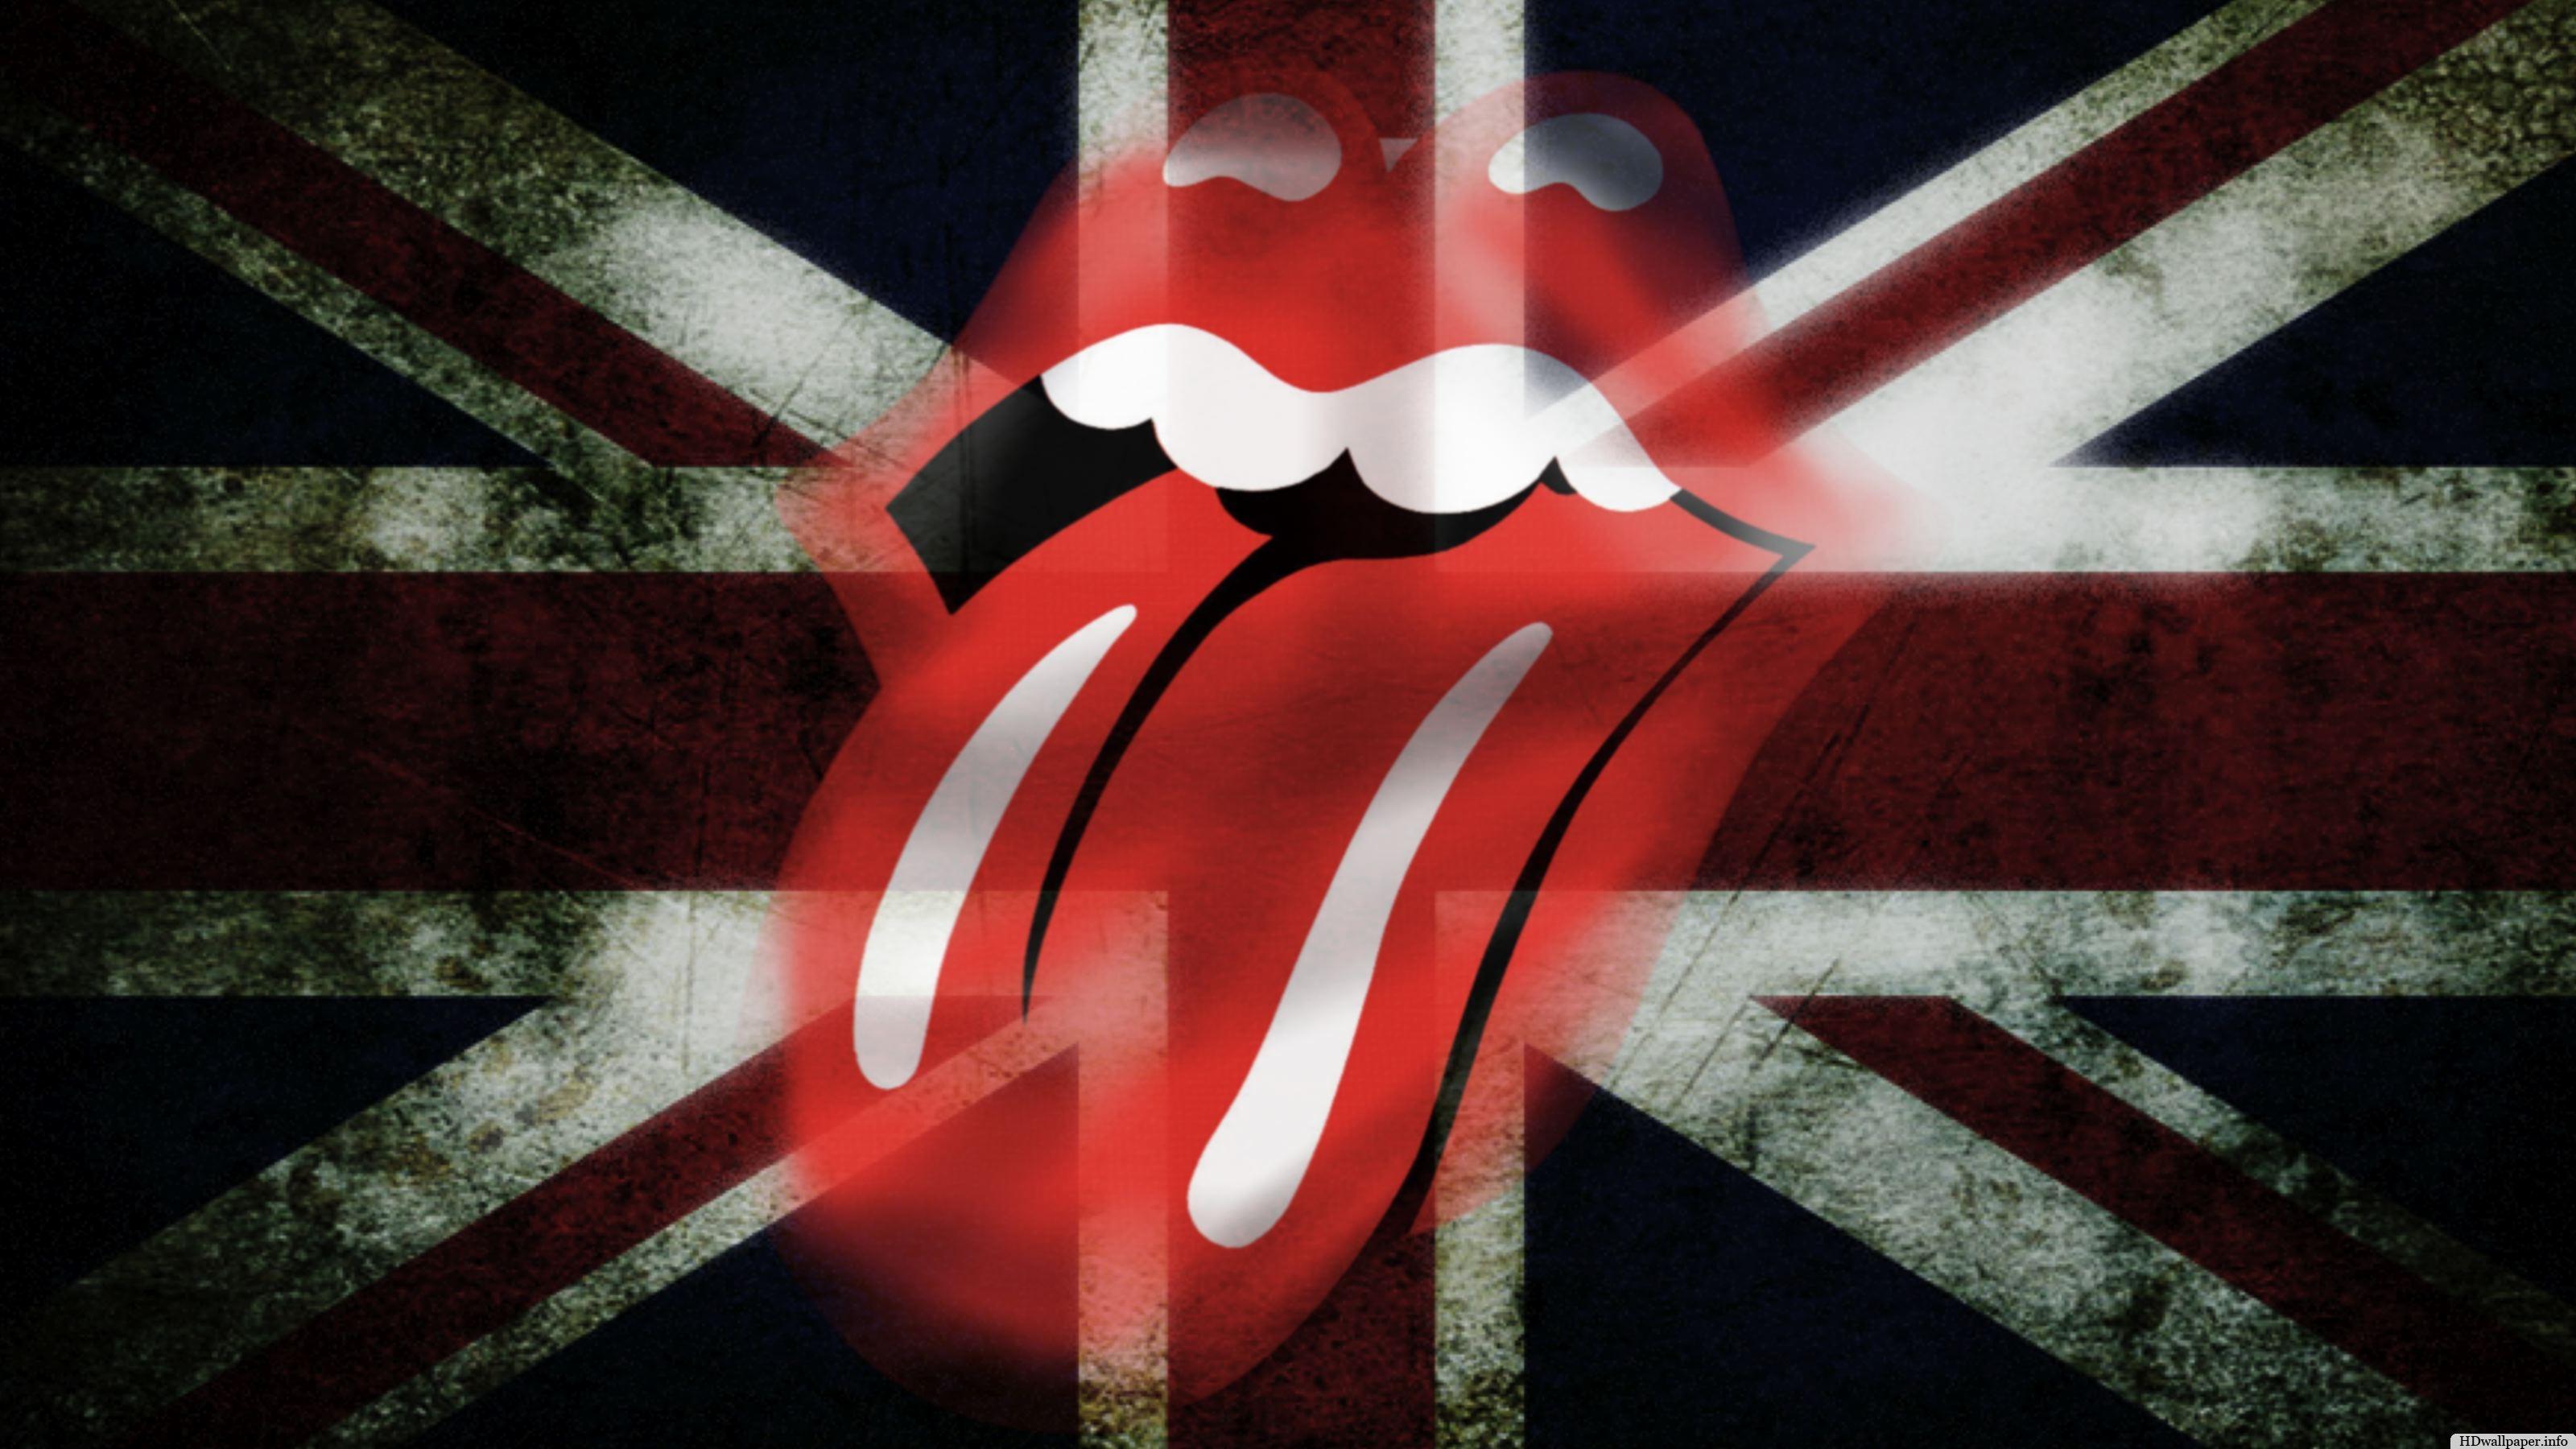 Hình nền The Rolling Stones 3200x1800 6 - 3200 X 1800